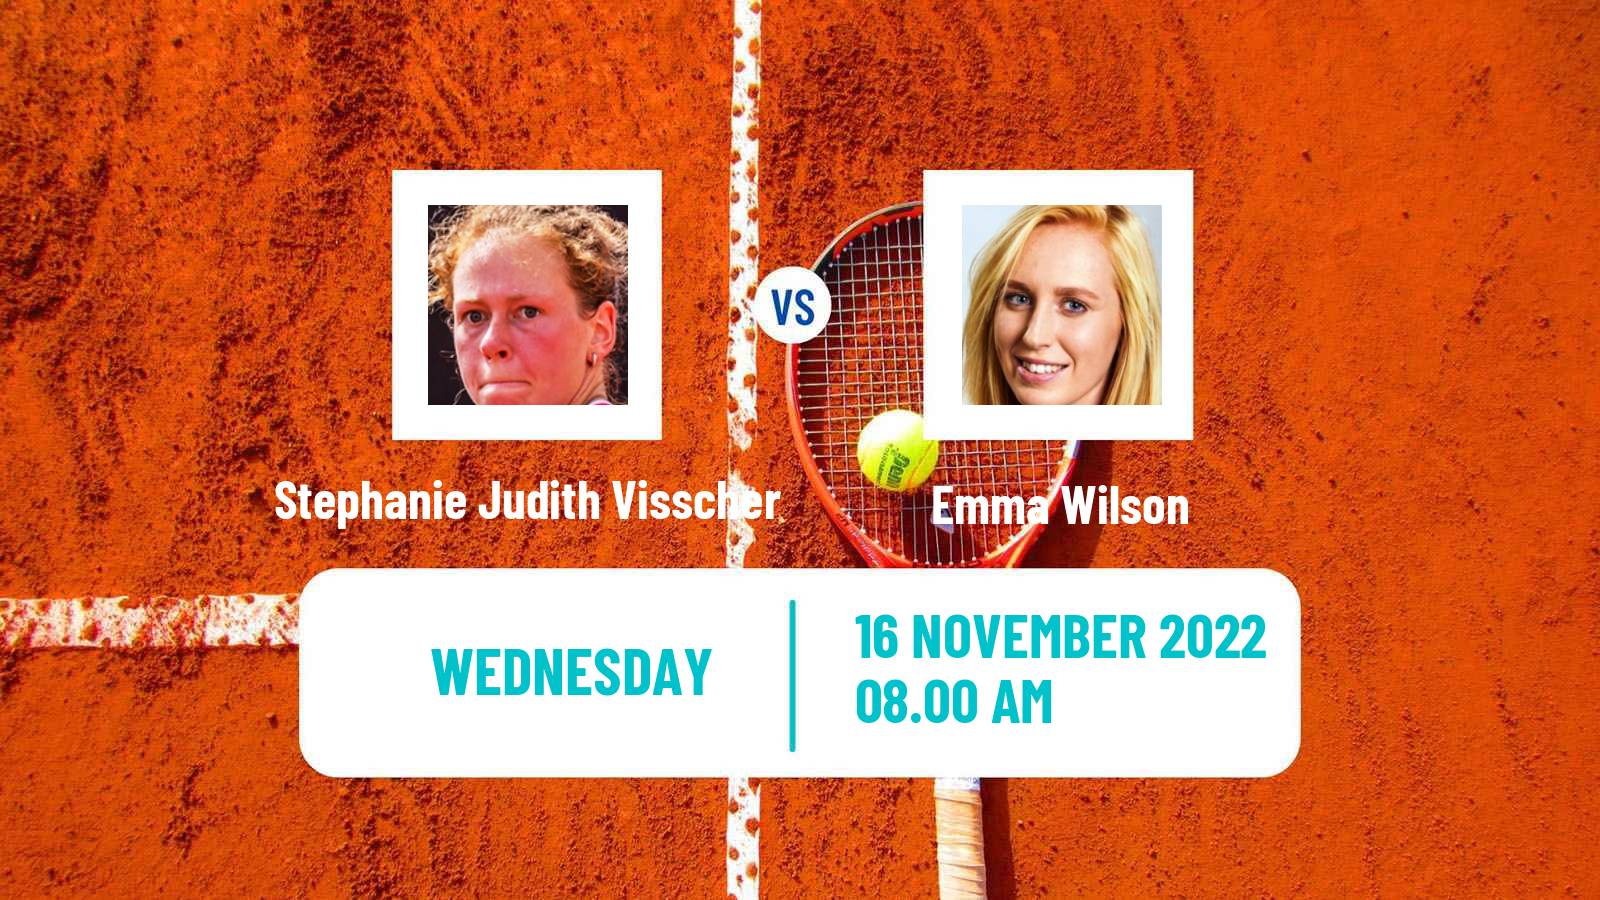 Tennis ITF Tournaments Stephanie Judith Visscher - Emma Wilson